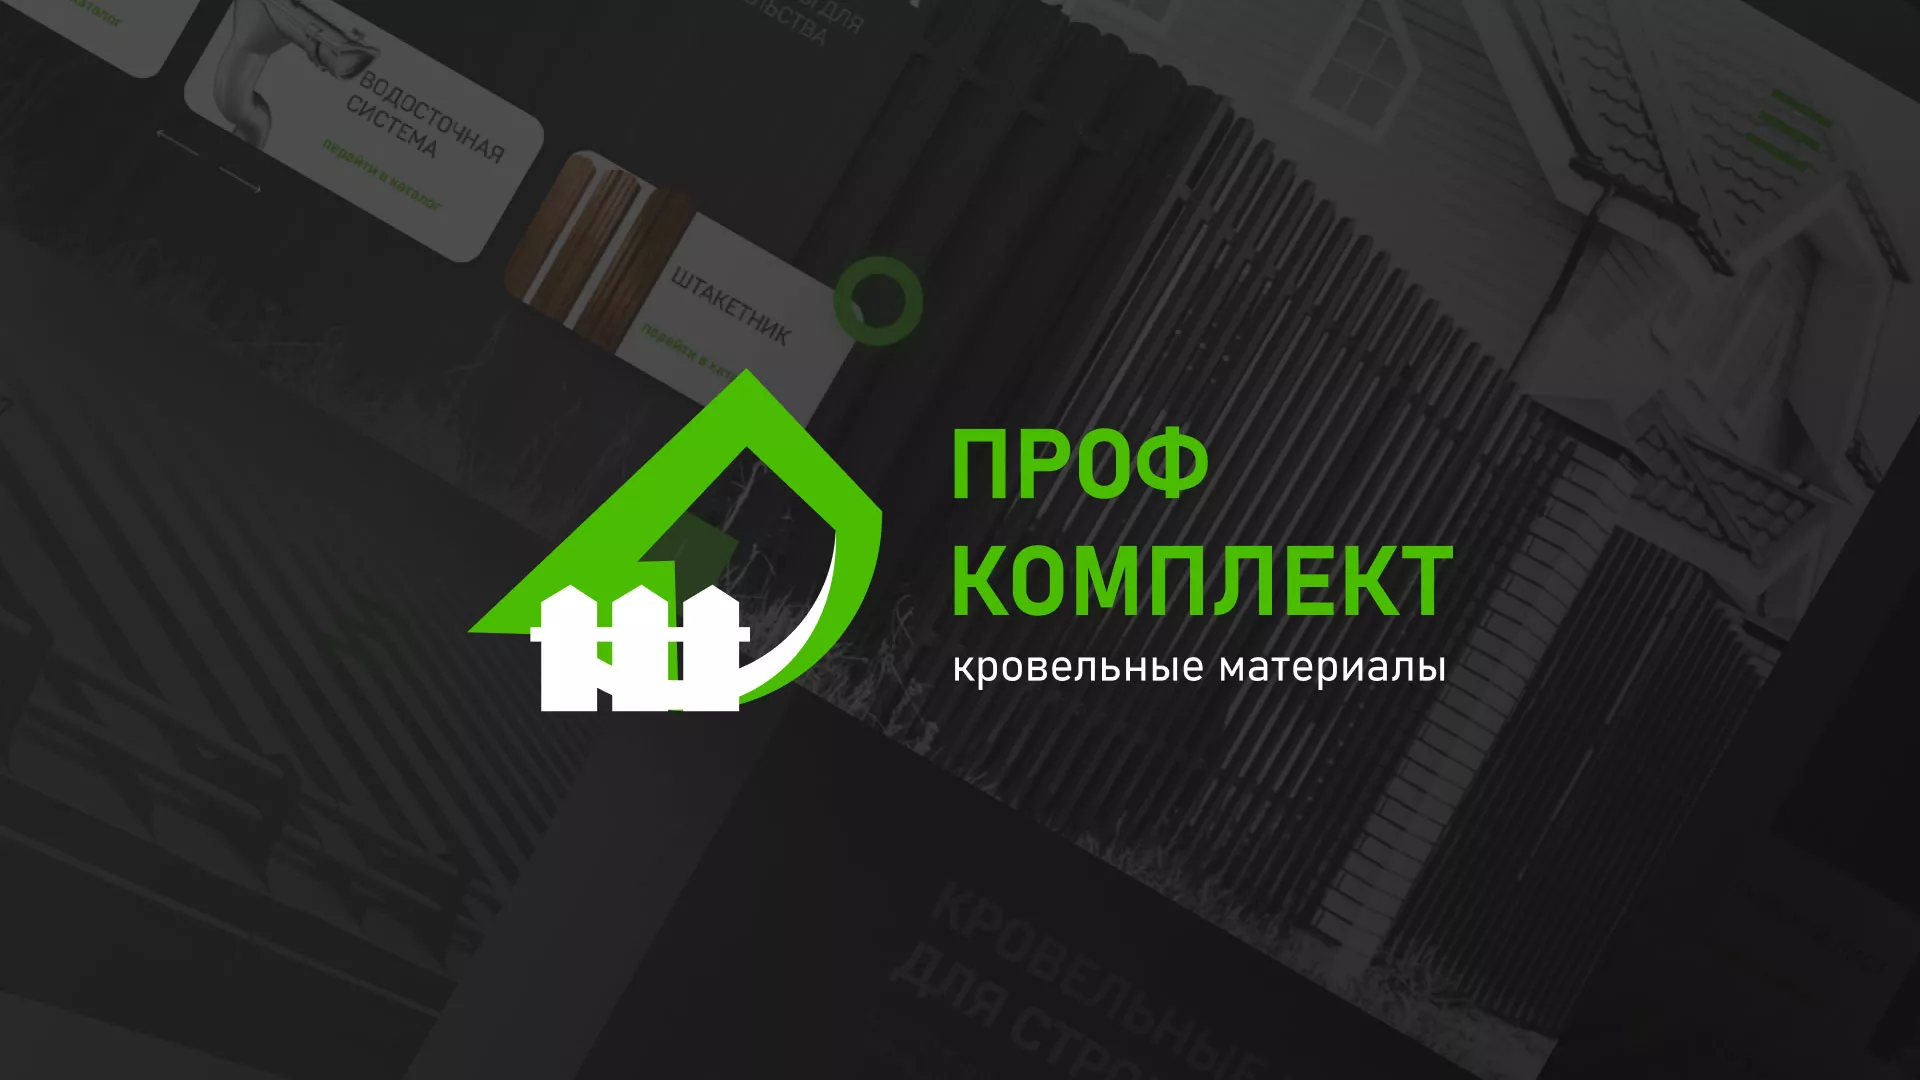 Создание сайта компании «Проф Комплект» в Одинцово